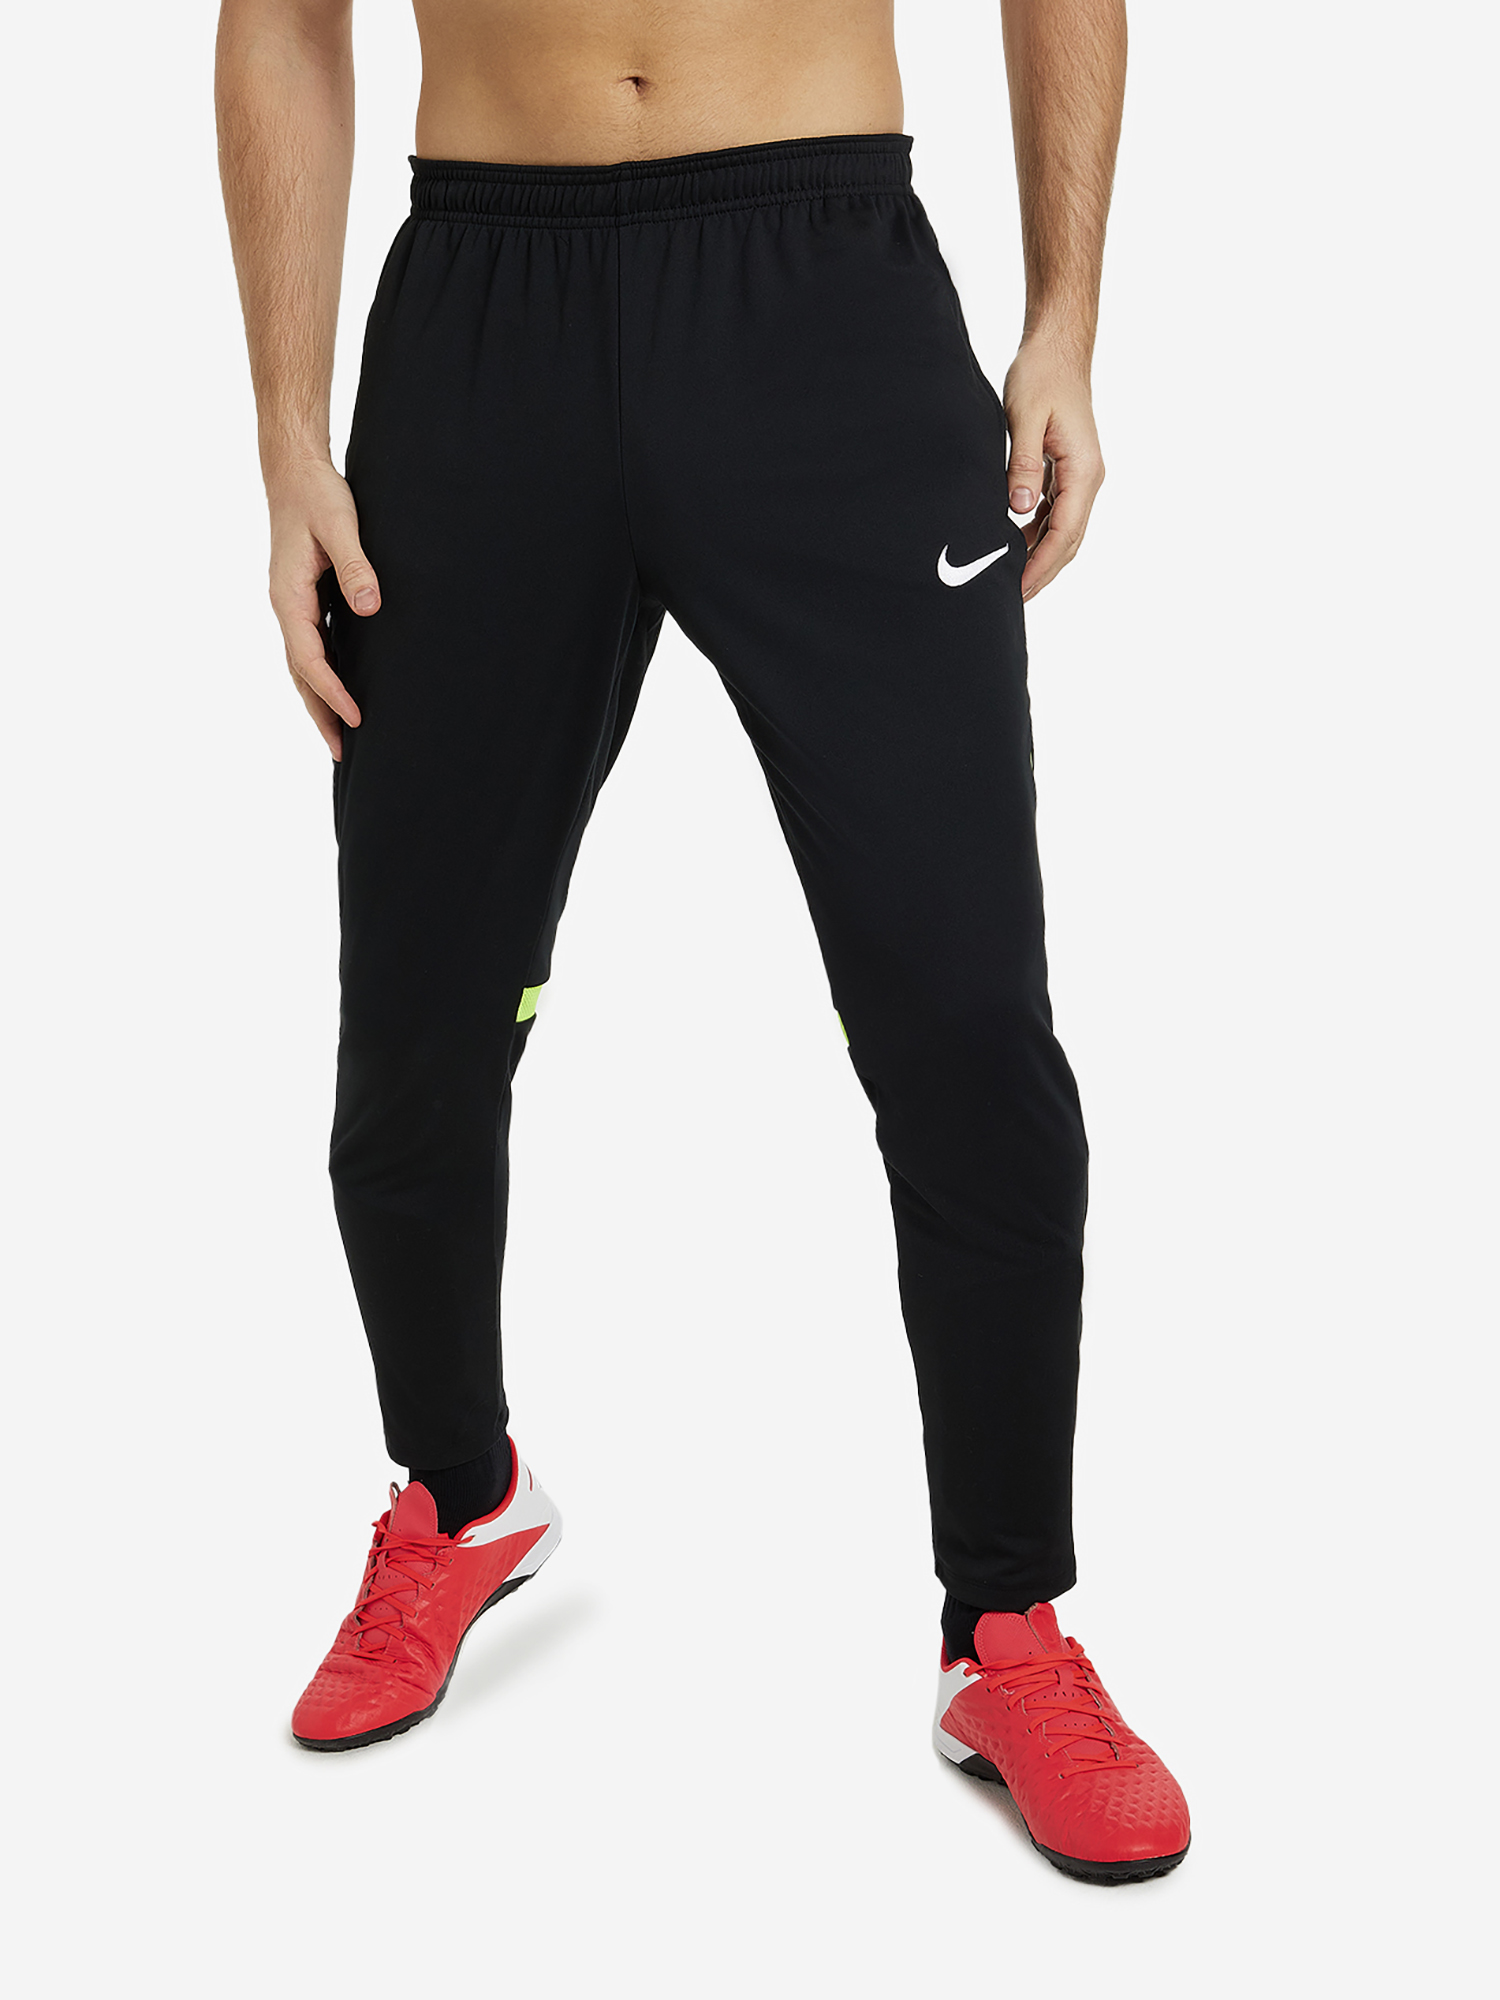 Брюки мужские Nike Training Academy Pro, Черный брюки для мальчиков nike kids training pant park 20 knit pant мульти